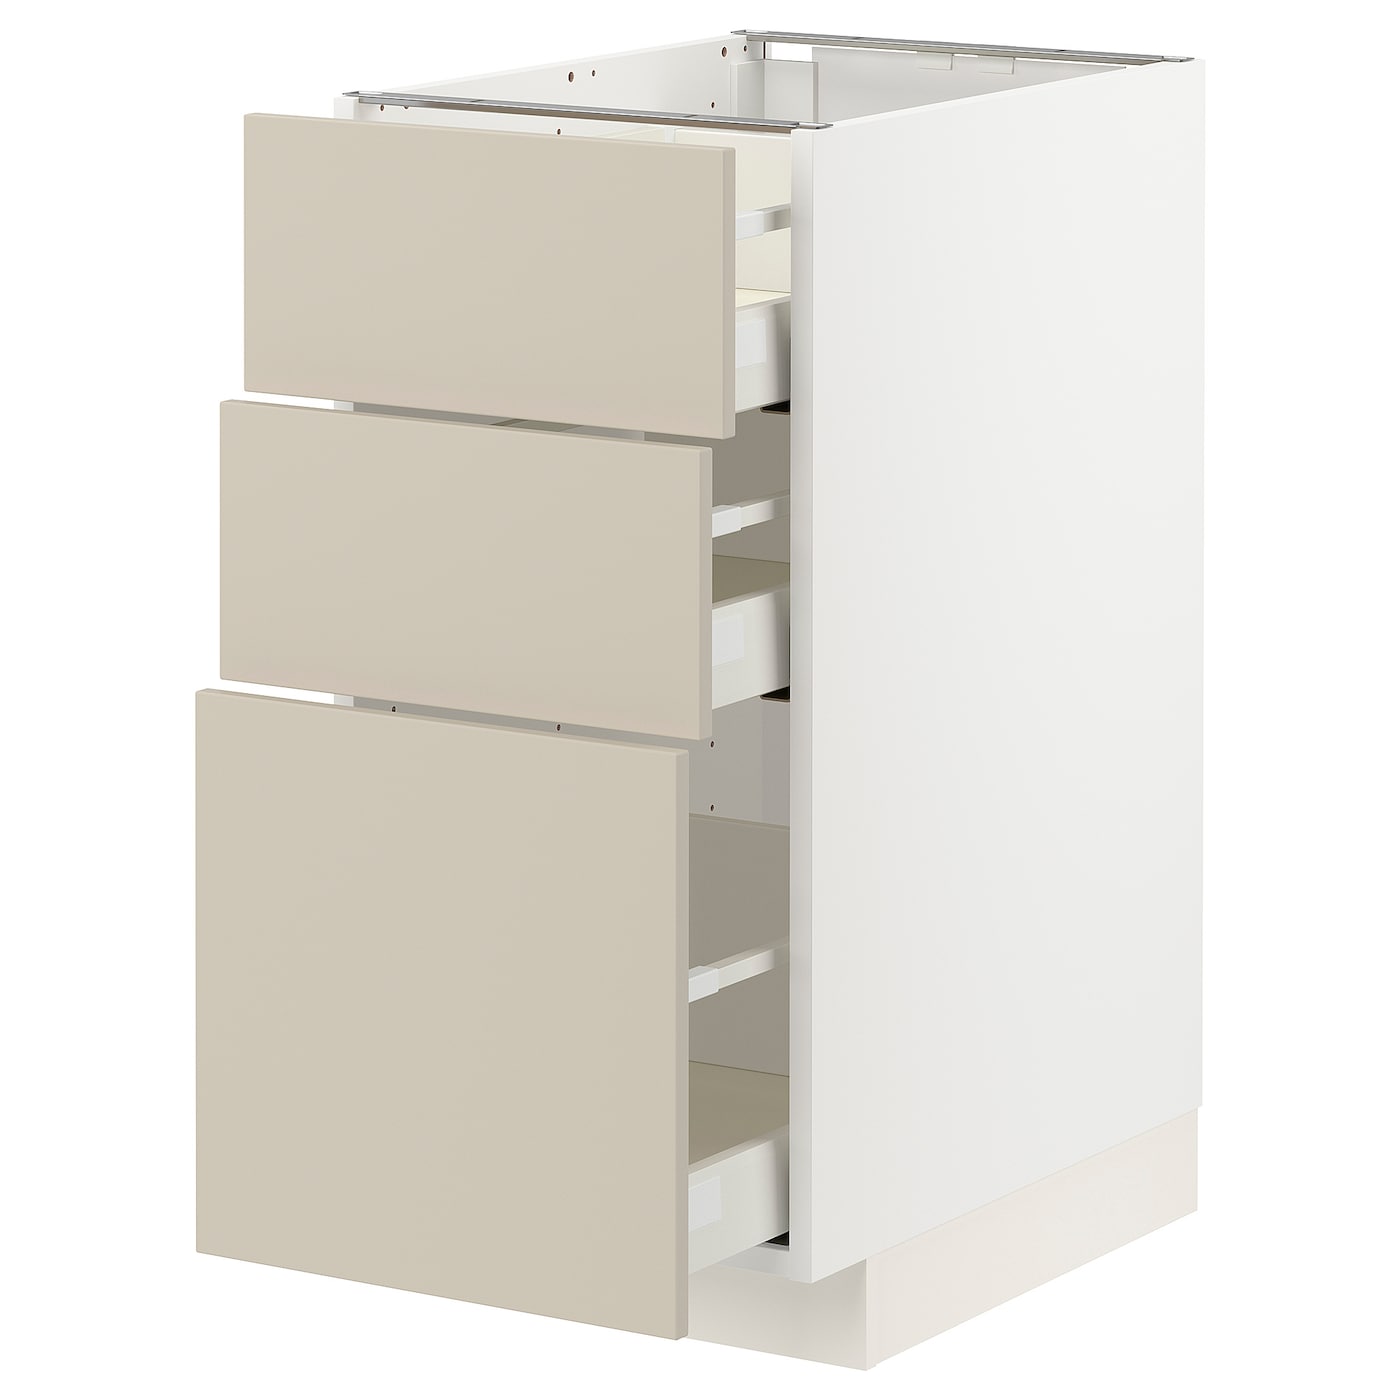 Напольный кухонный шкаф - IKEA METOD MAXIMERA, 88x62x40см, белый/бежевый, МЕТОД МАКСИМЕРА ИКЕА